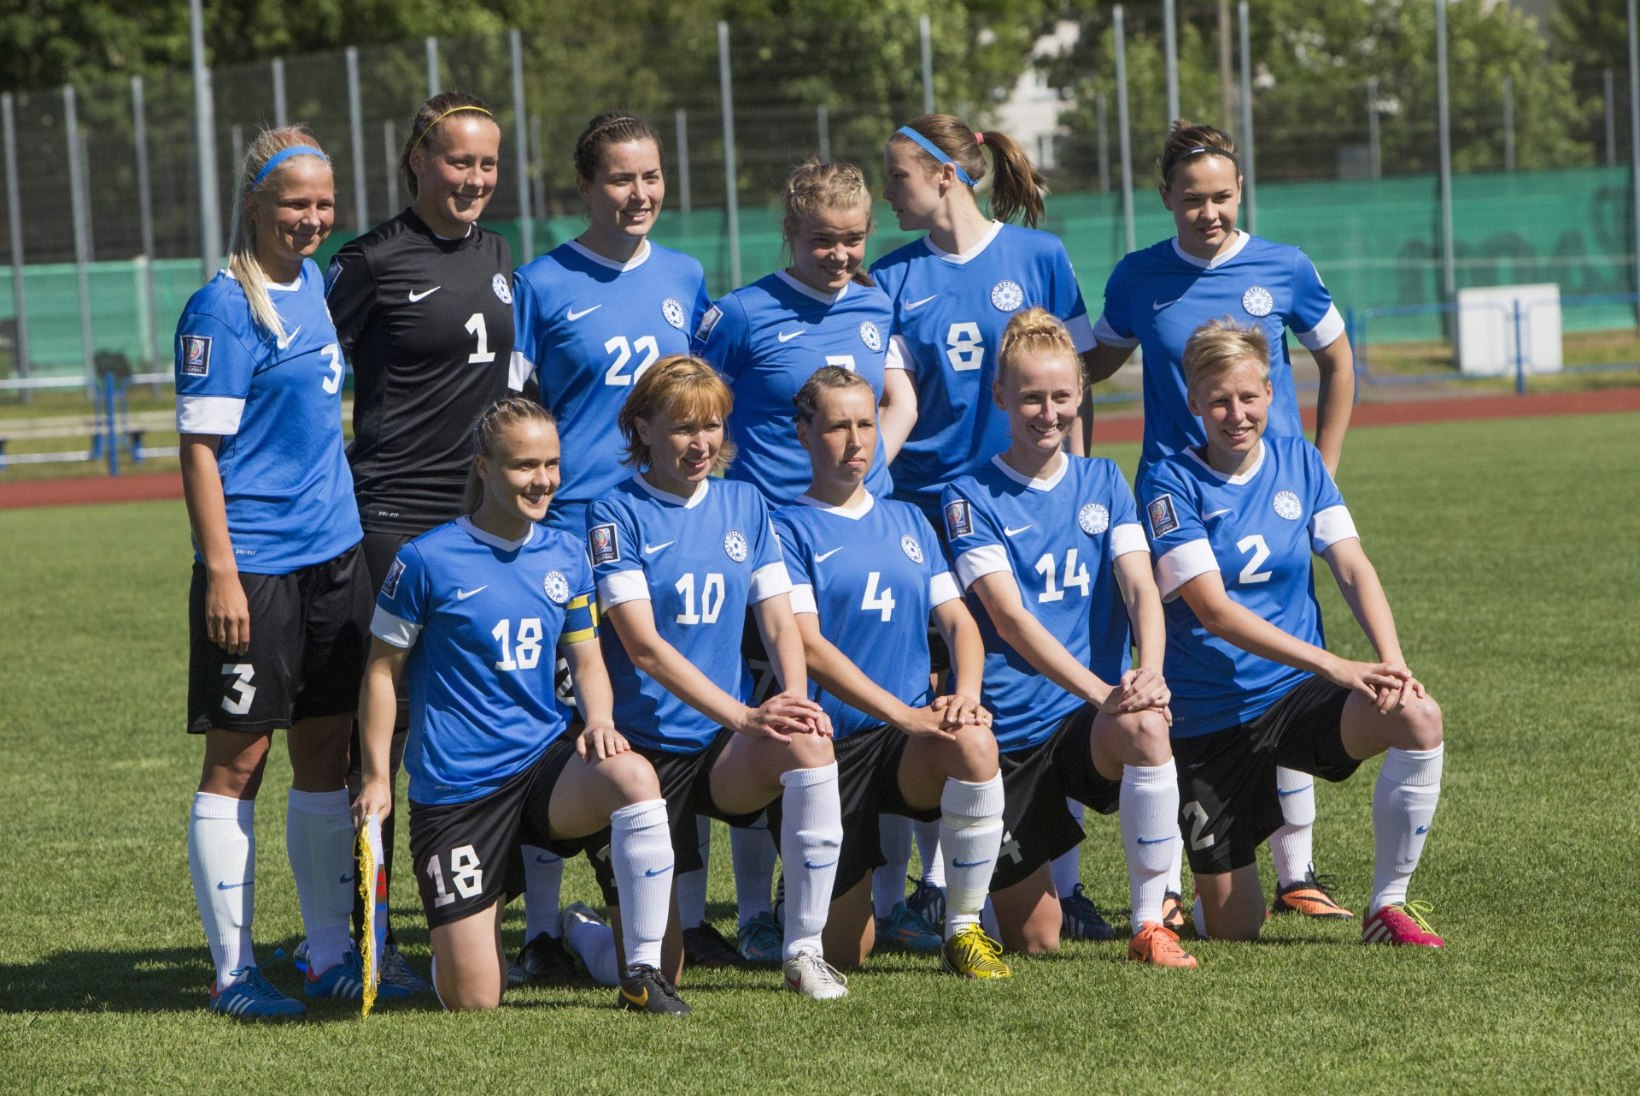 Naiste jalgpalli arengut pärsib "väikese Eesti sündroom"